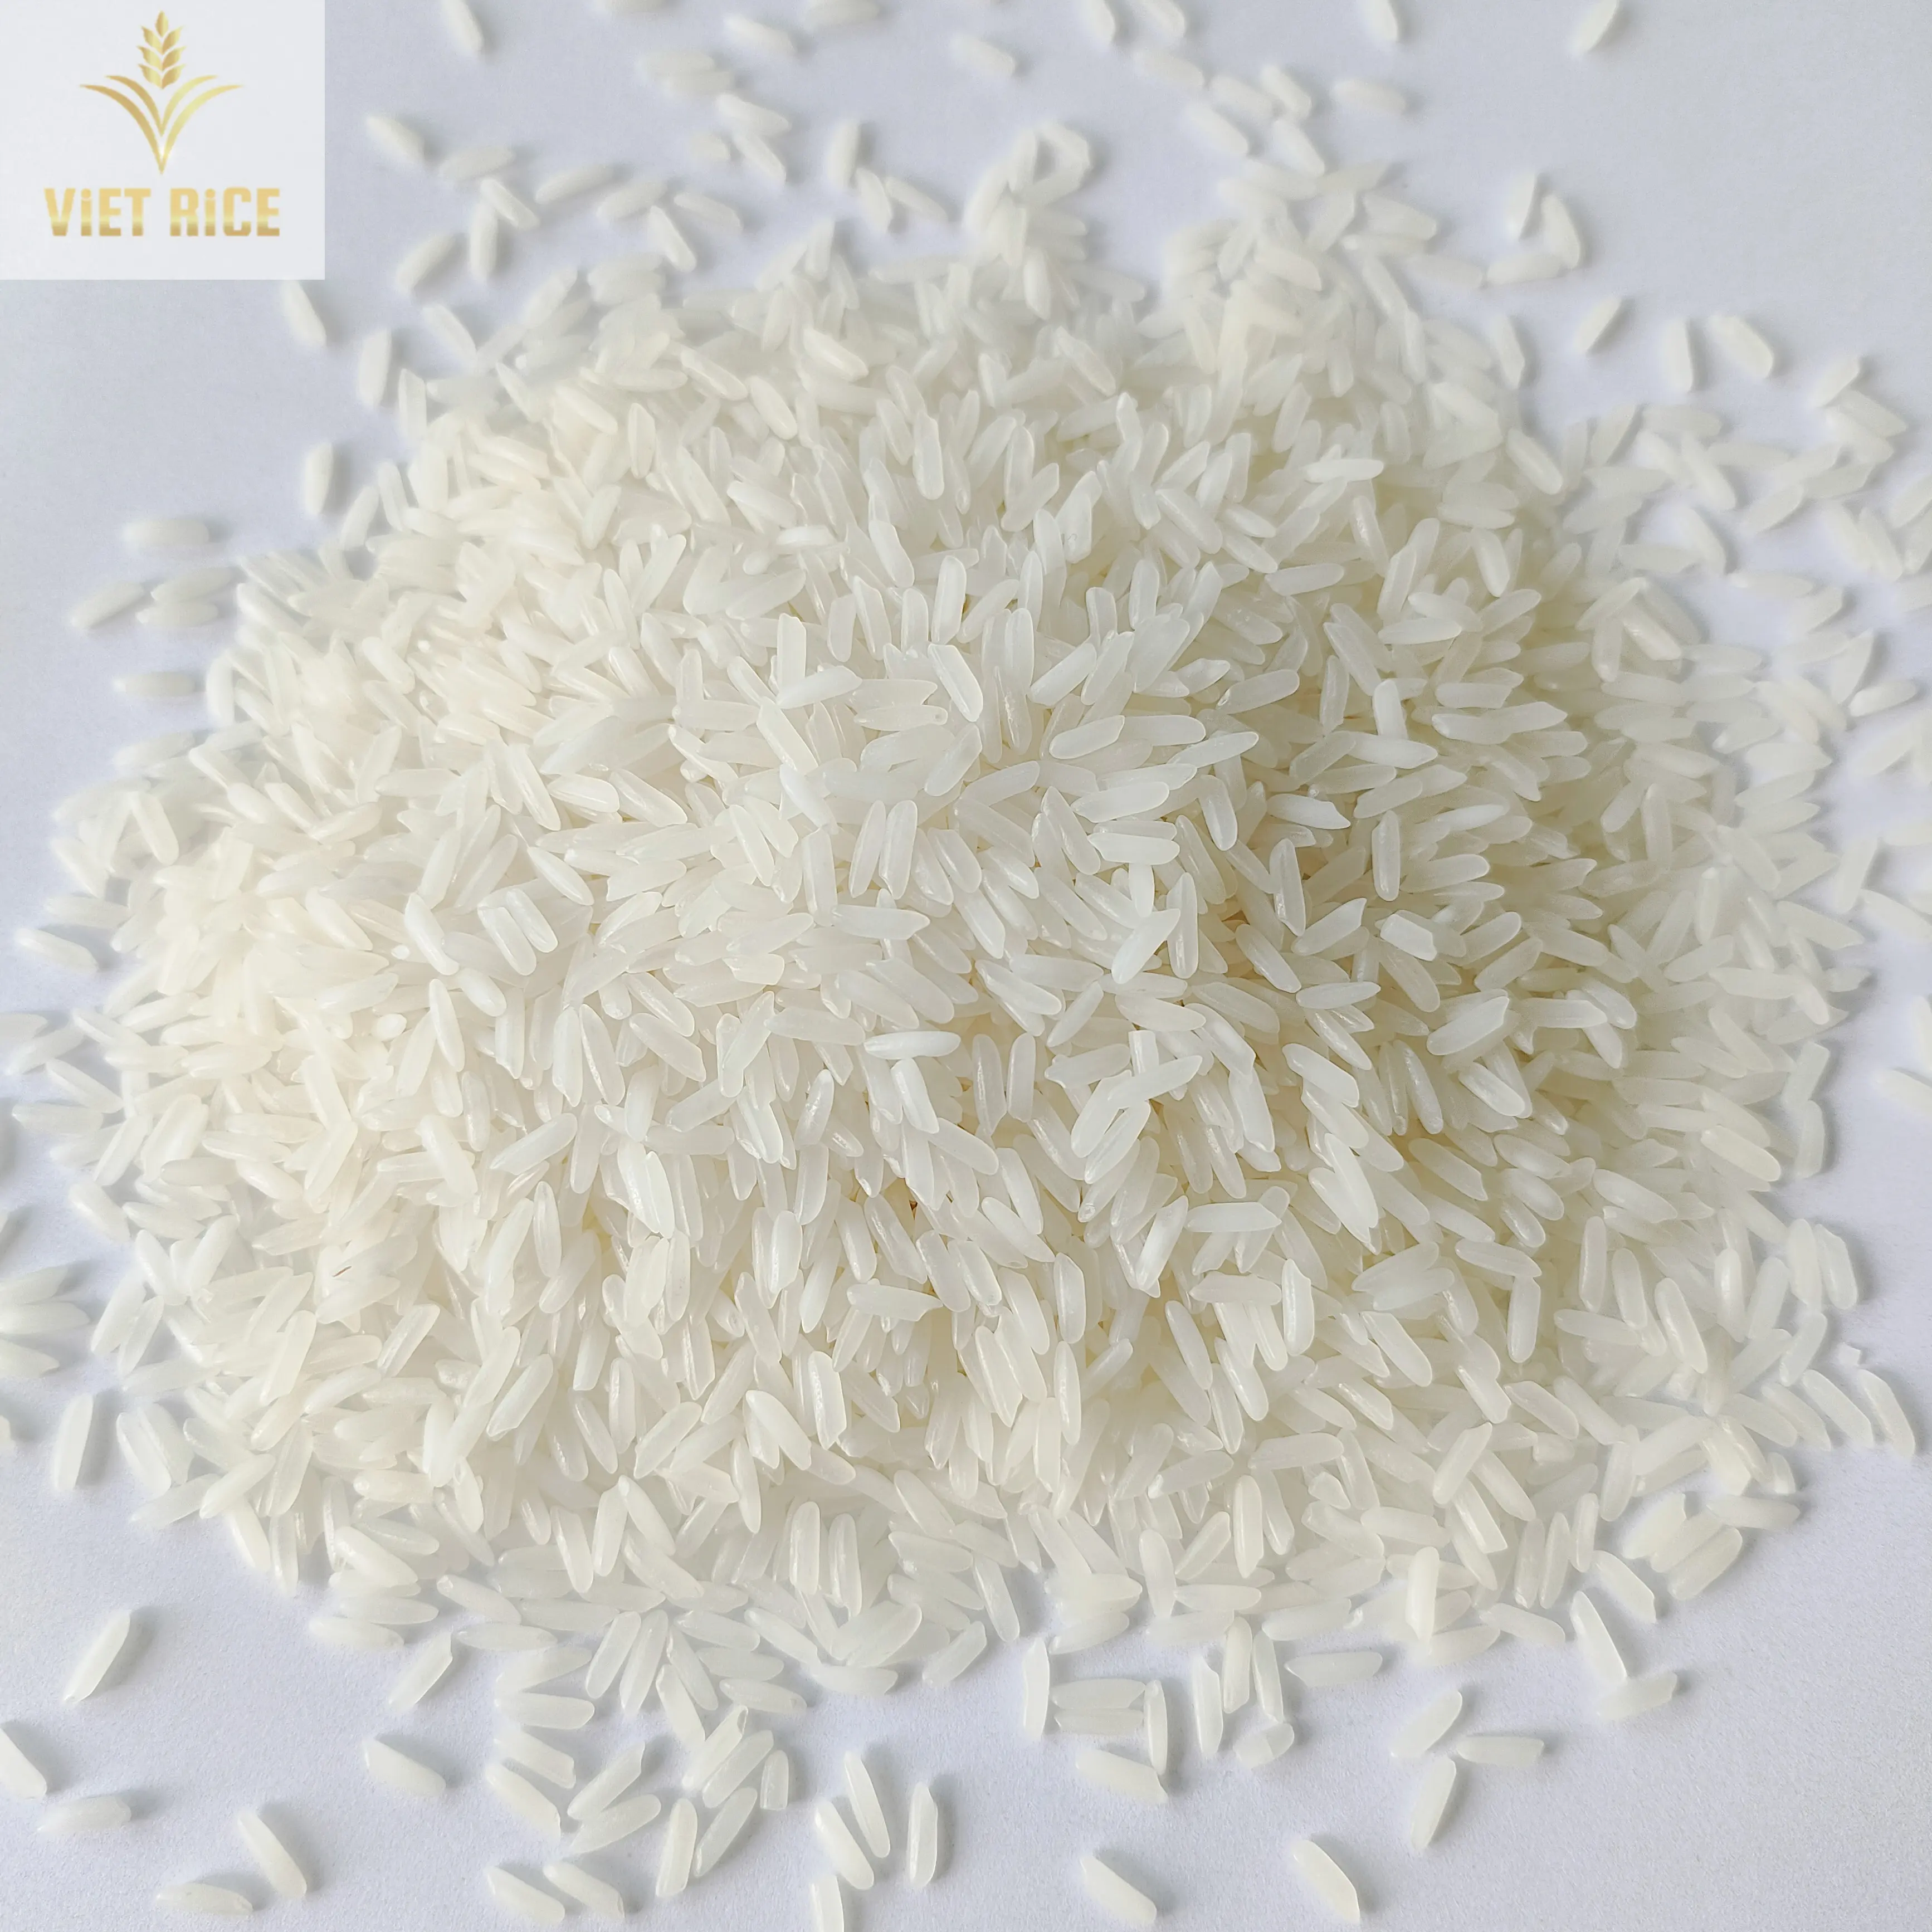 Bán gạo trắng hạt dài 5451 gạo gạo bán nhiều nhất có số lượng lớn tại nhà máy. Whatsapp + 84 769340108